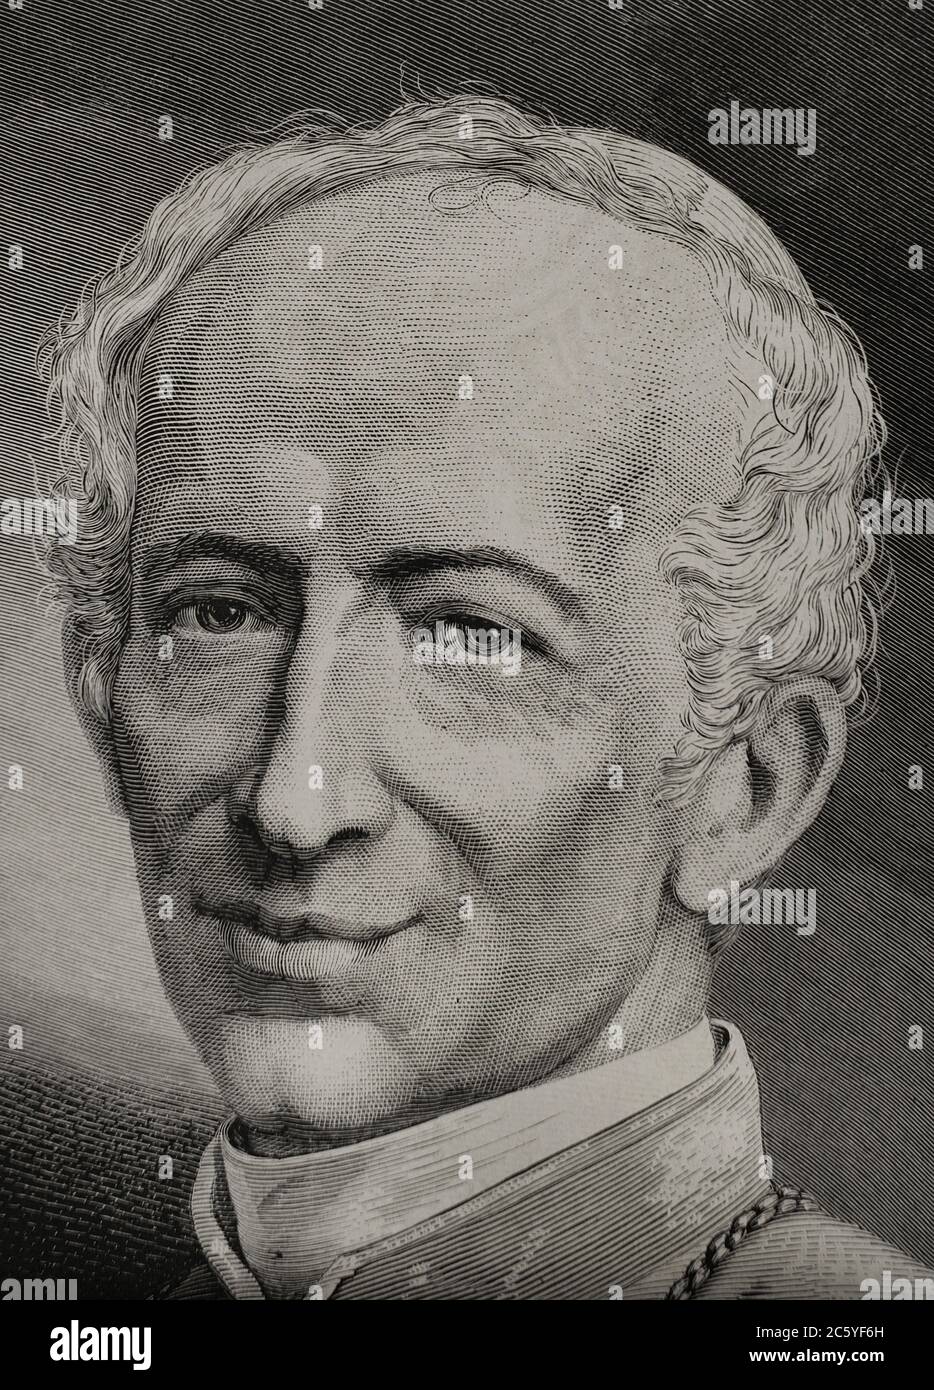 León XIII (1810-1903). Papa italiano (1878-1903), de nombre Vincenzo Gioacchino Pecci. Grabado. La Ilustración Española y Americana,1878. Stock Photo